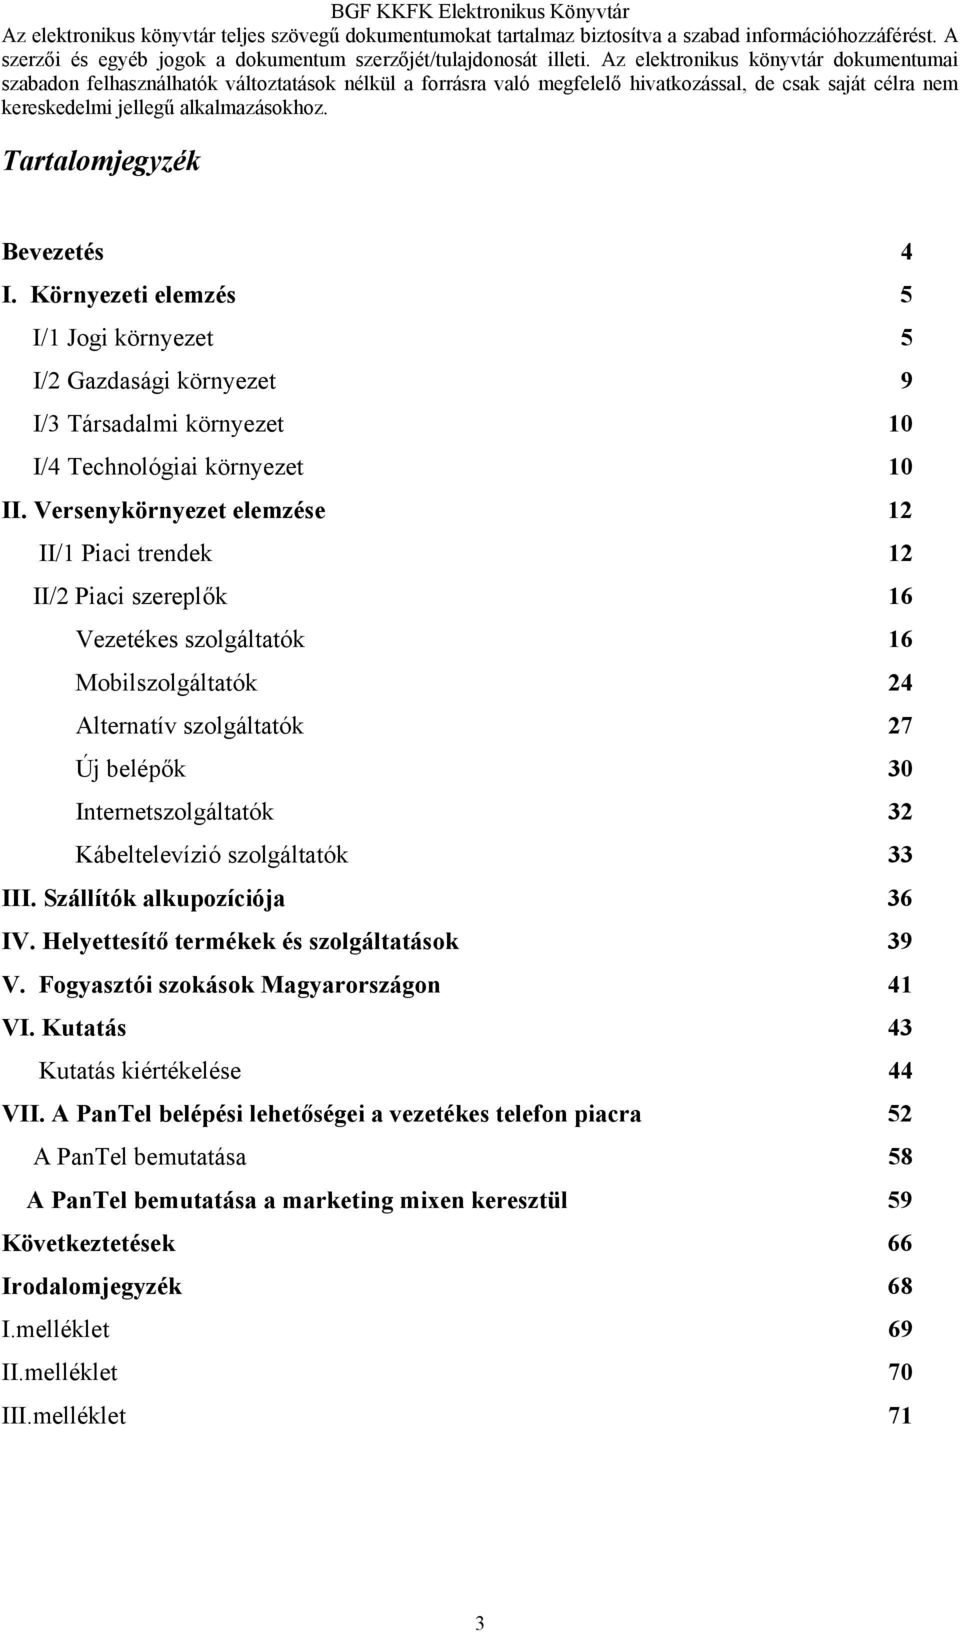 Kábeltelevízió szolgáltatók 33 III. Szállítók alkupozíciója 36 IV. Helyettesítő termékek és szolgáltatások 39 V. Fogyasztói szokások Magyarországon 41 VI.